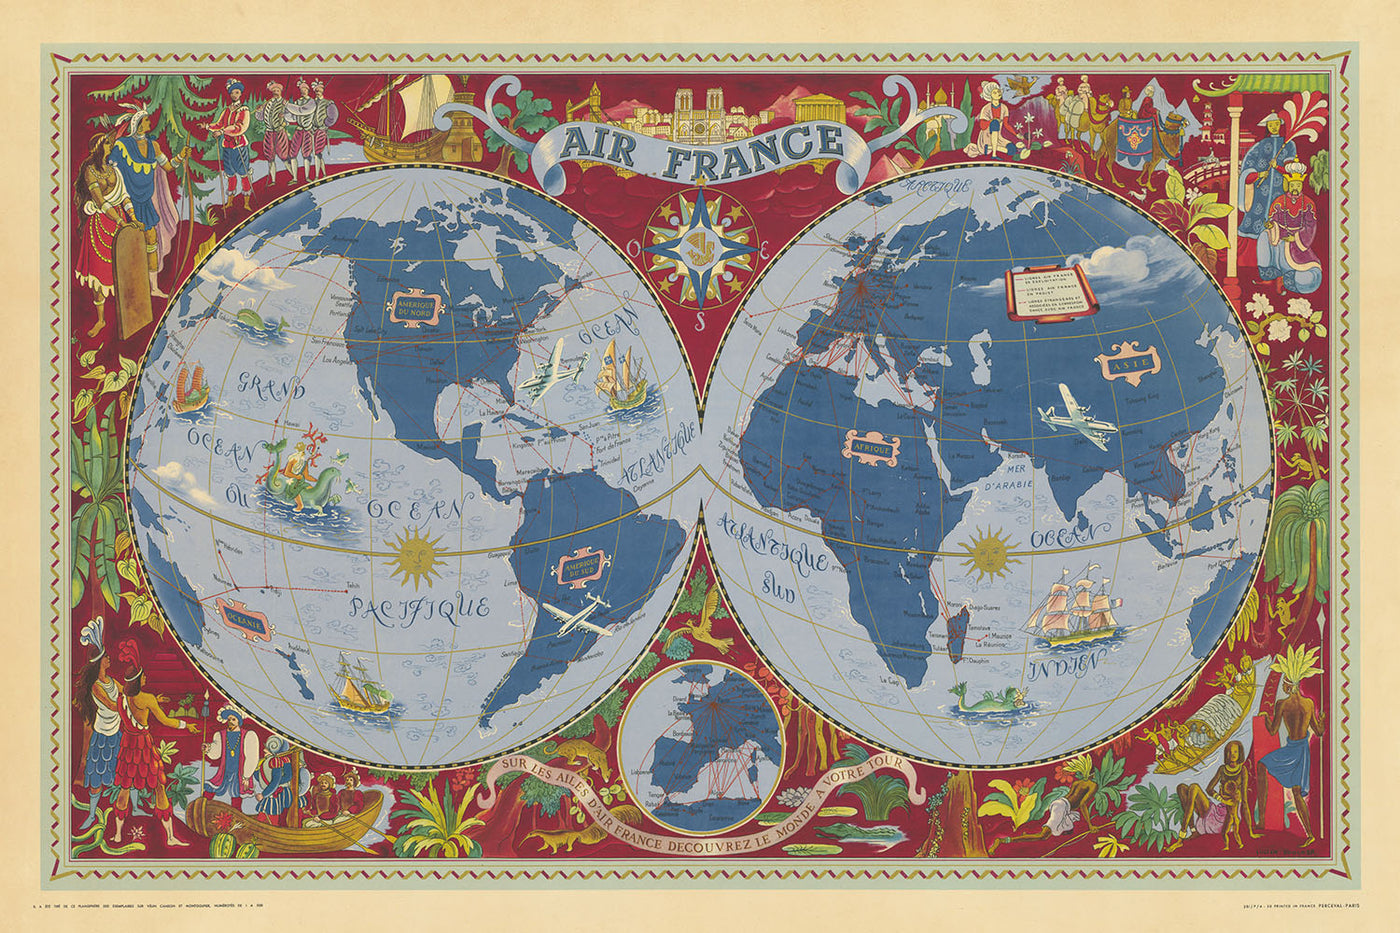 Mapa del viejo mundo Mapa mundial de Air France de Boucher, 1950: decorativo, rutas aéreas, estilo surrealista